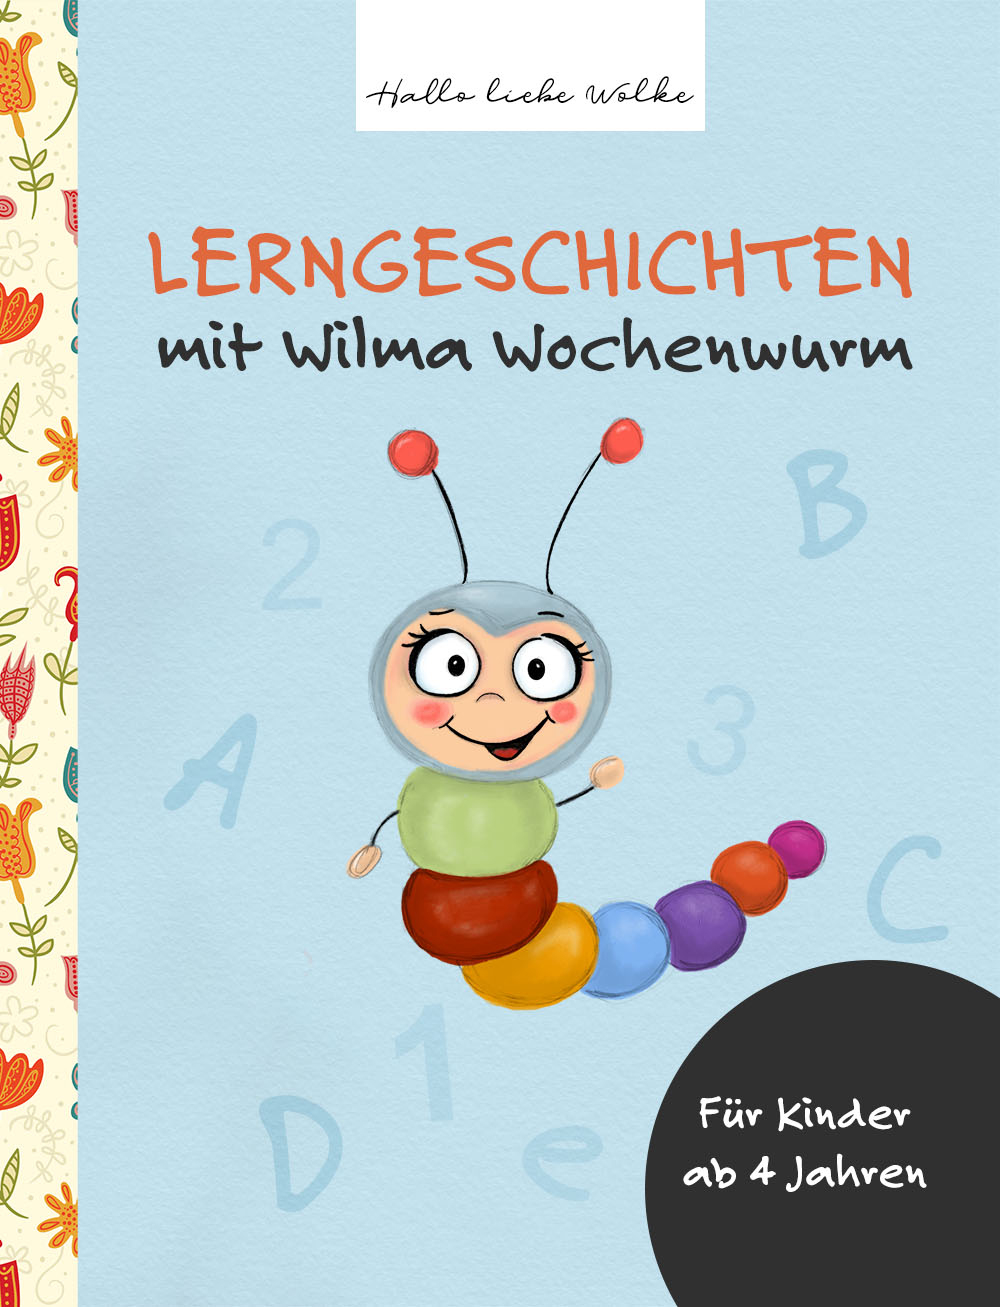 Wochentage Lernen Mit Wilma Wochenwurm (Lerngeschichte verwandt mit Spannende Kurzgeschichten Grundschule